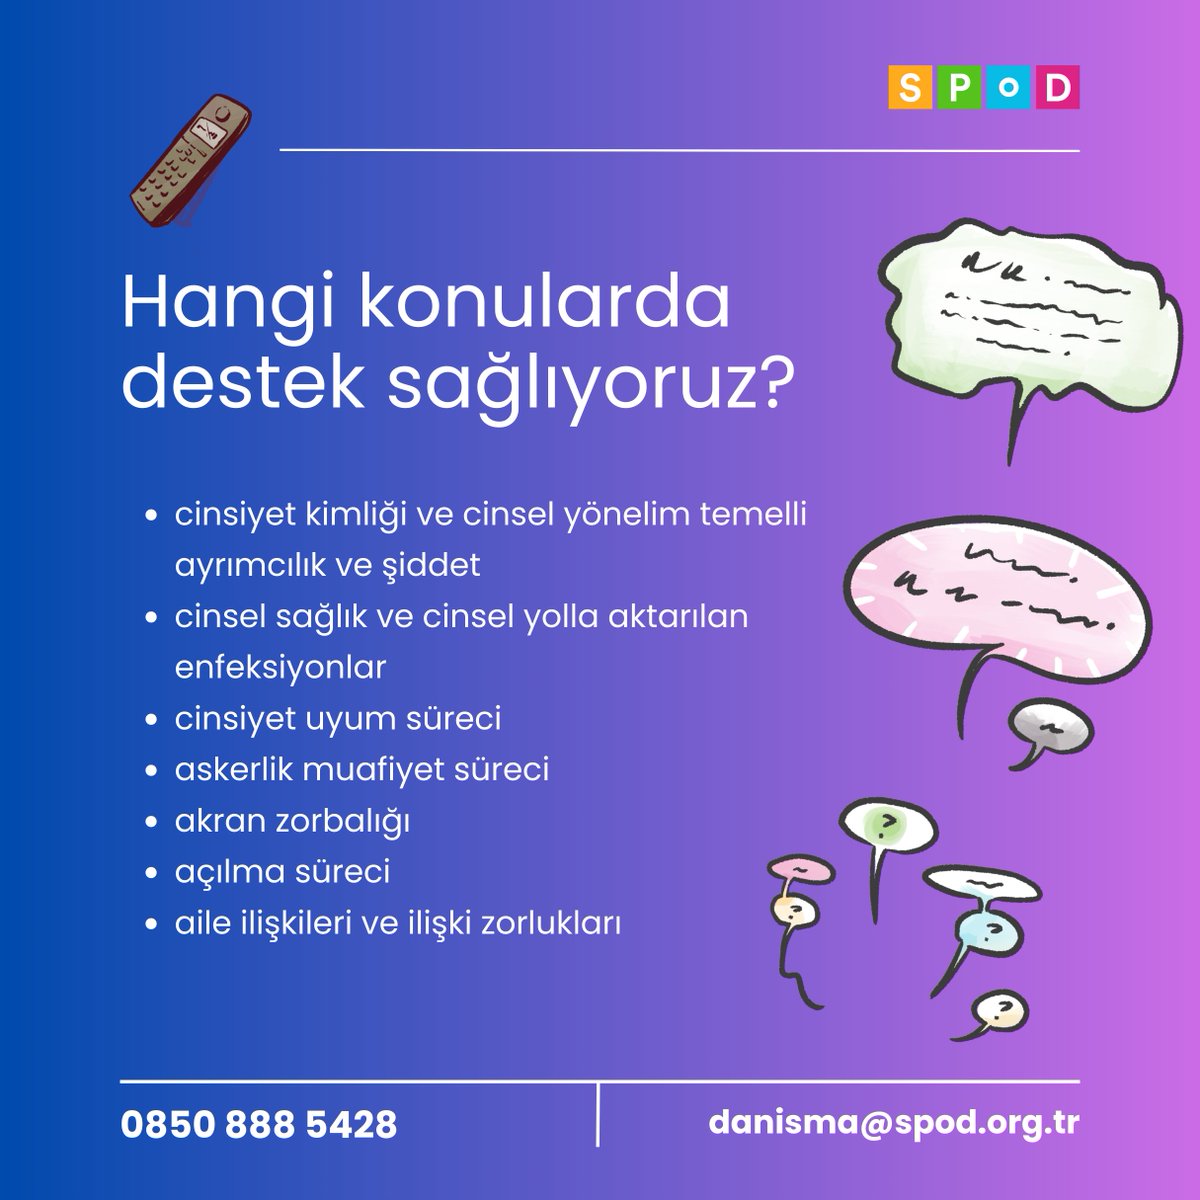 ☎️ Türkçe ve anonim hizmet veren LGBTİ+ Danışma Hattı'nı çarşamba, perşembe, cuma ve pazar günleri 12.00-18.00 saatleri arasında arayabilirsiniz! 0850 888 54 28 numaralı telefondan ve danisma@spod.org.tr adresinden bize ulaşabilirsiniz.